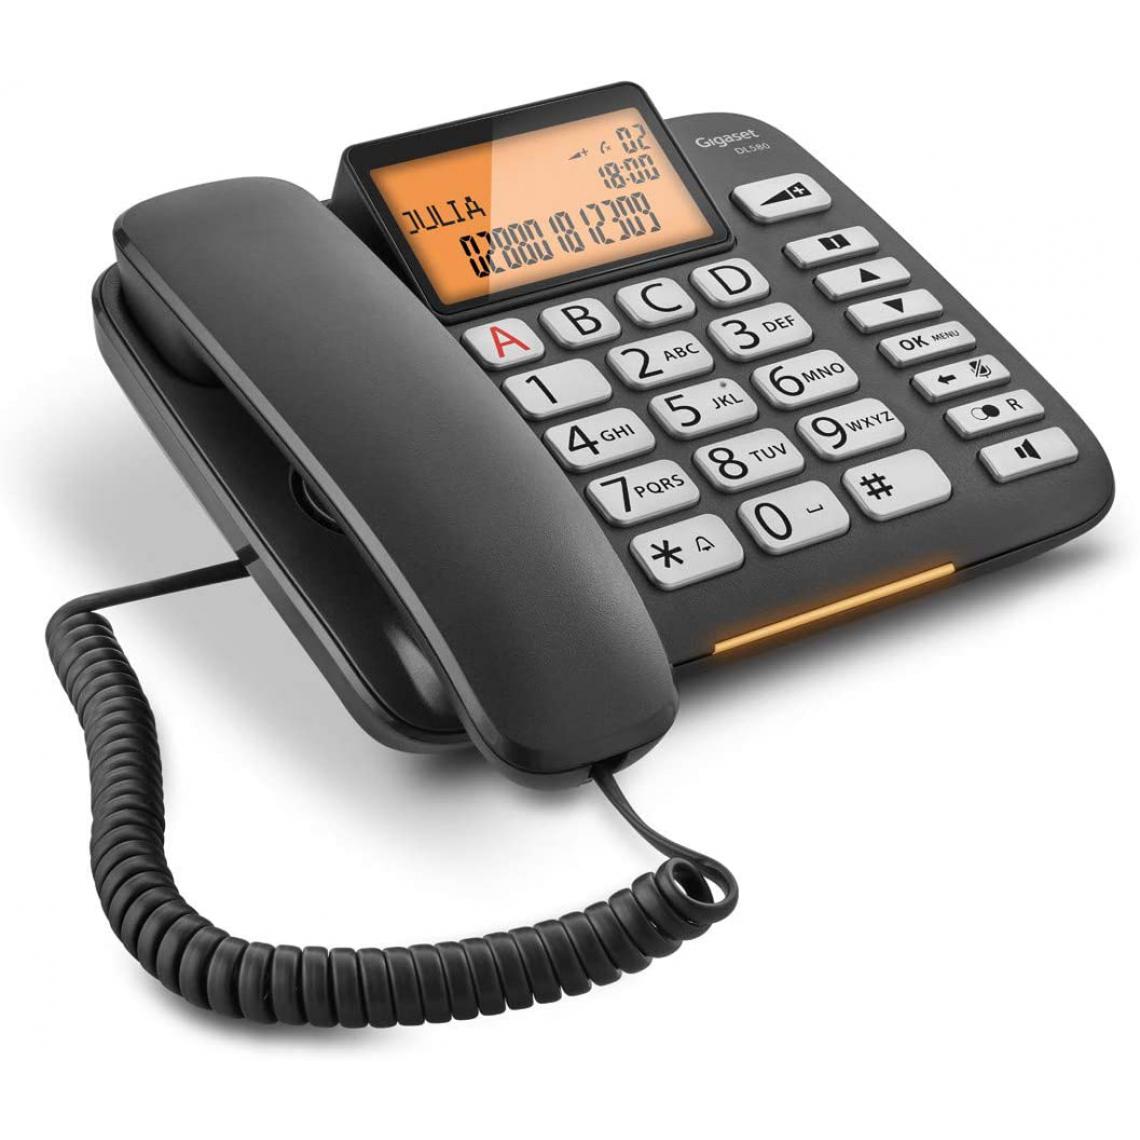 Gigaset - téléphone fixe Filaire avec Fonction Mains-Libres, Larges Touches, Signal d'appel Lumineux noir - Téléphone fixe filaire